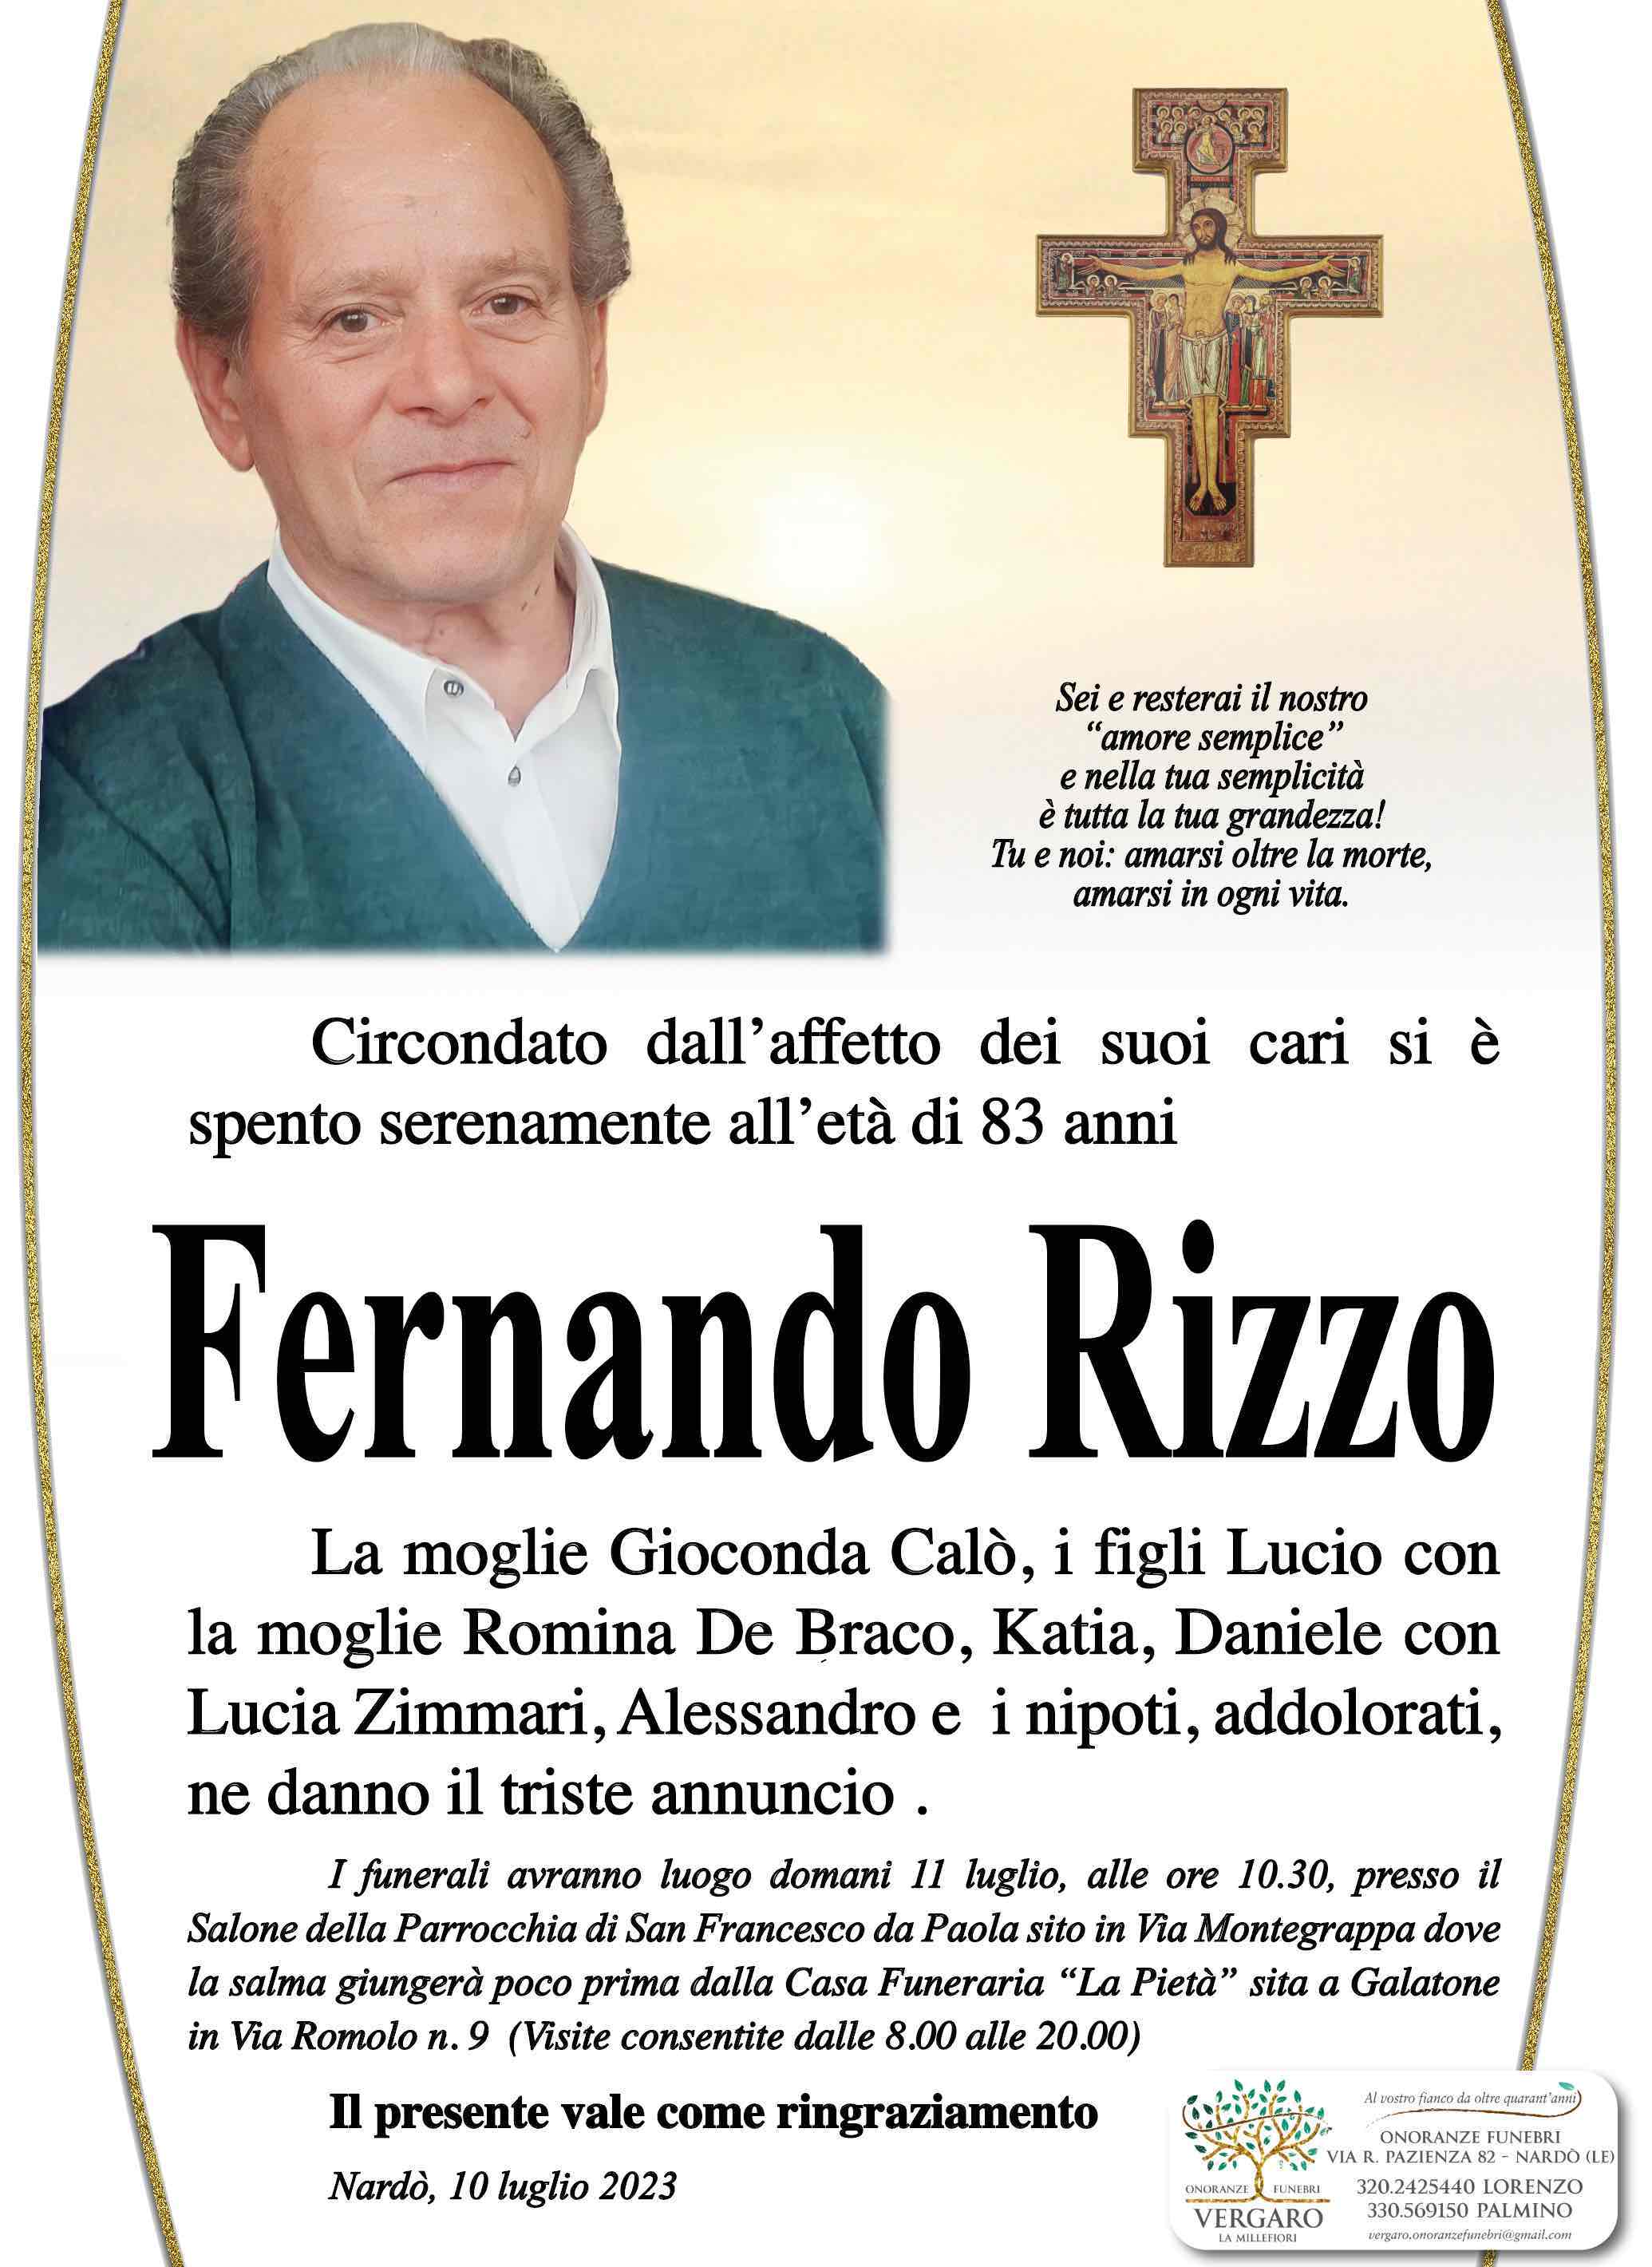 Fernando Rizzo